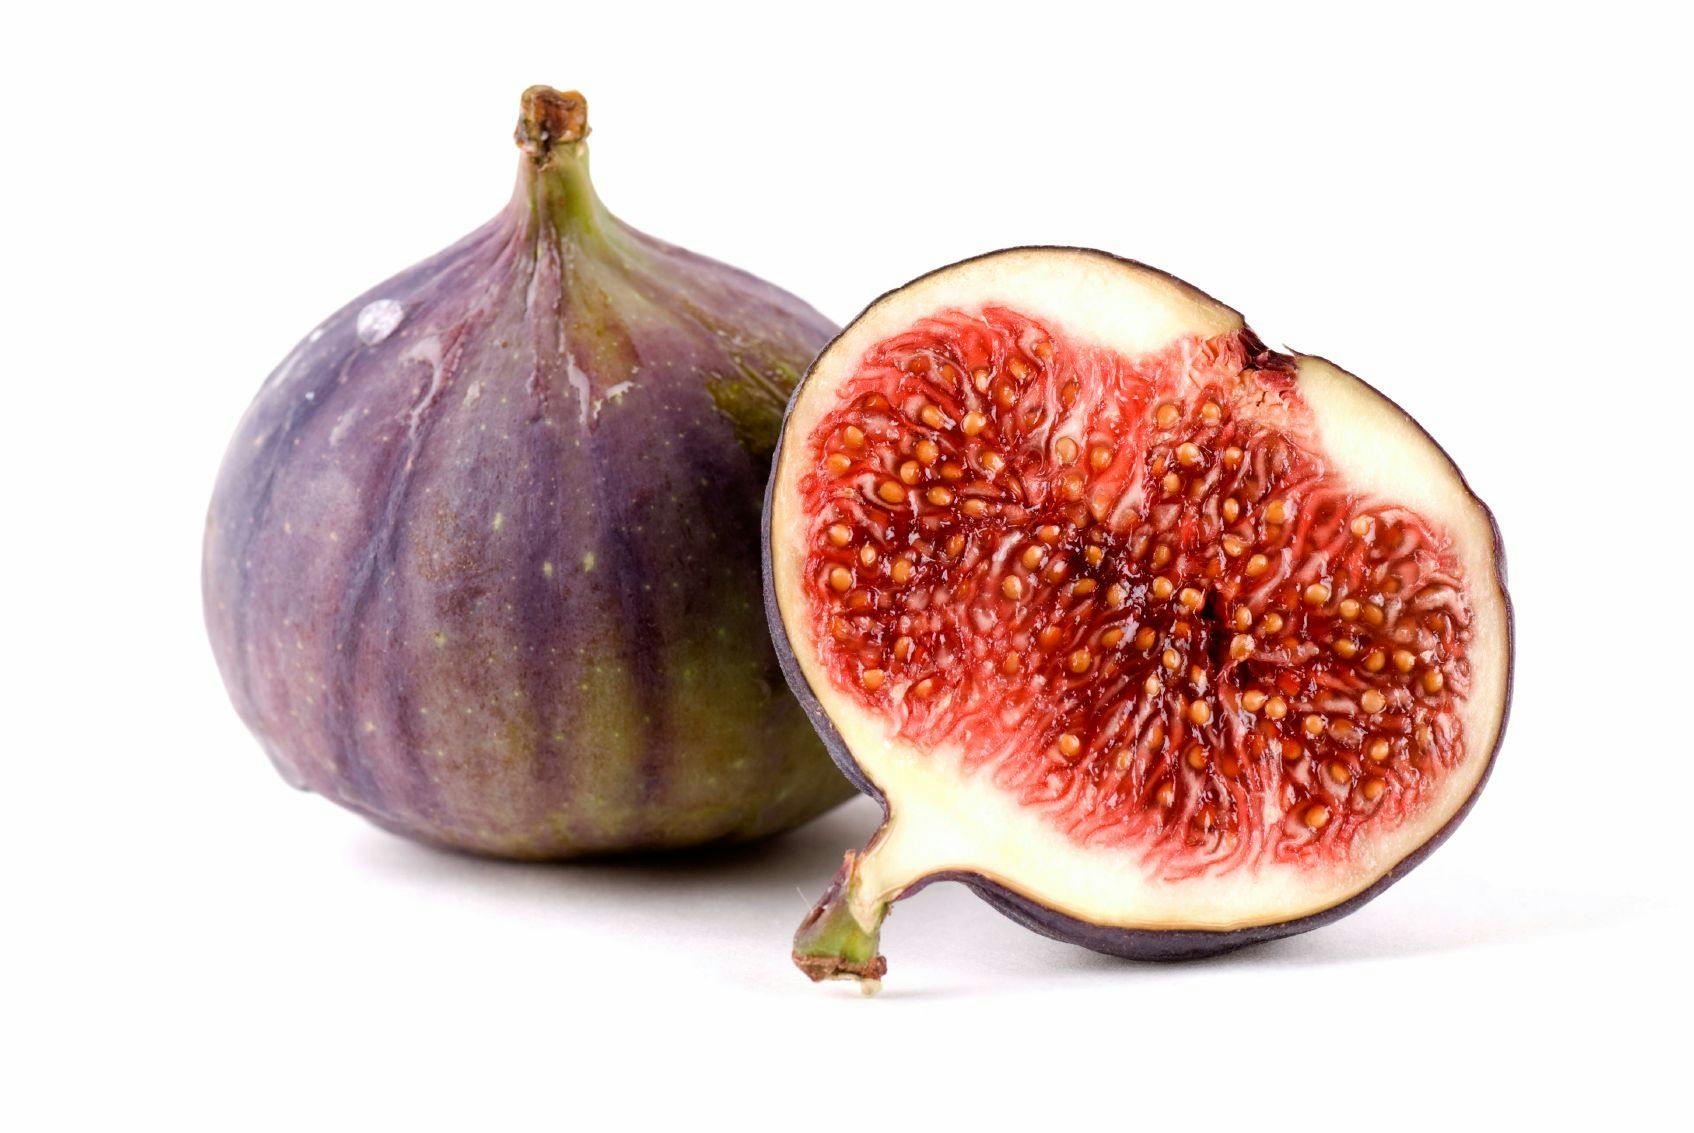 Fun Fact: Figs